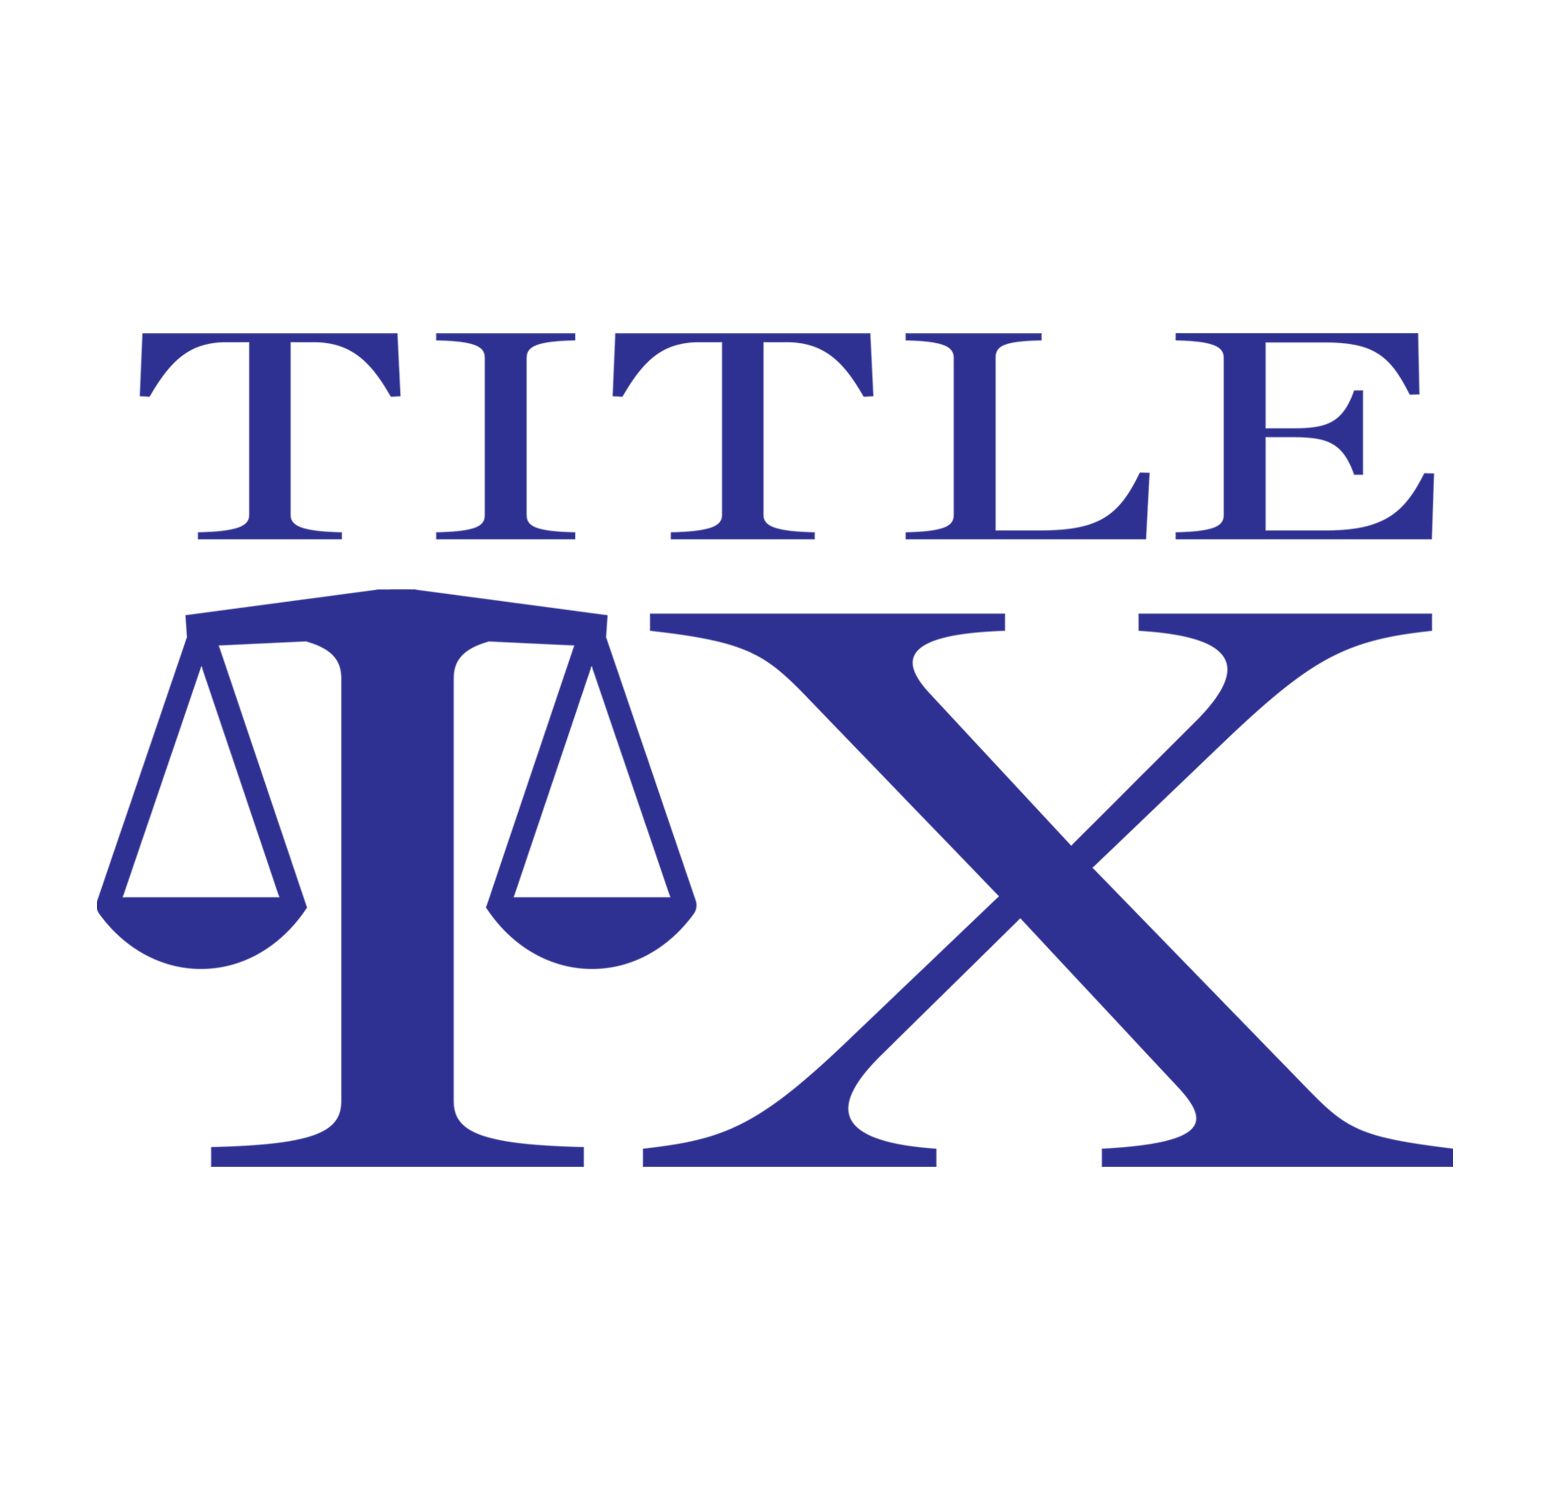 title ix logo